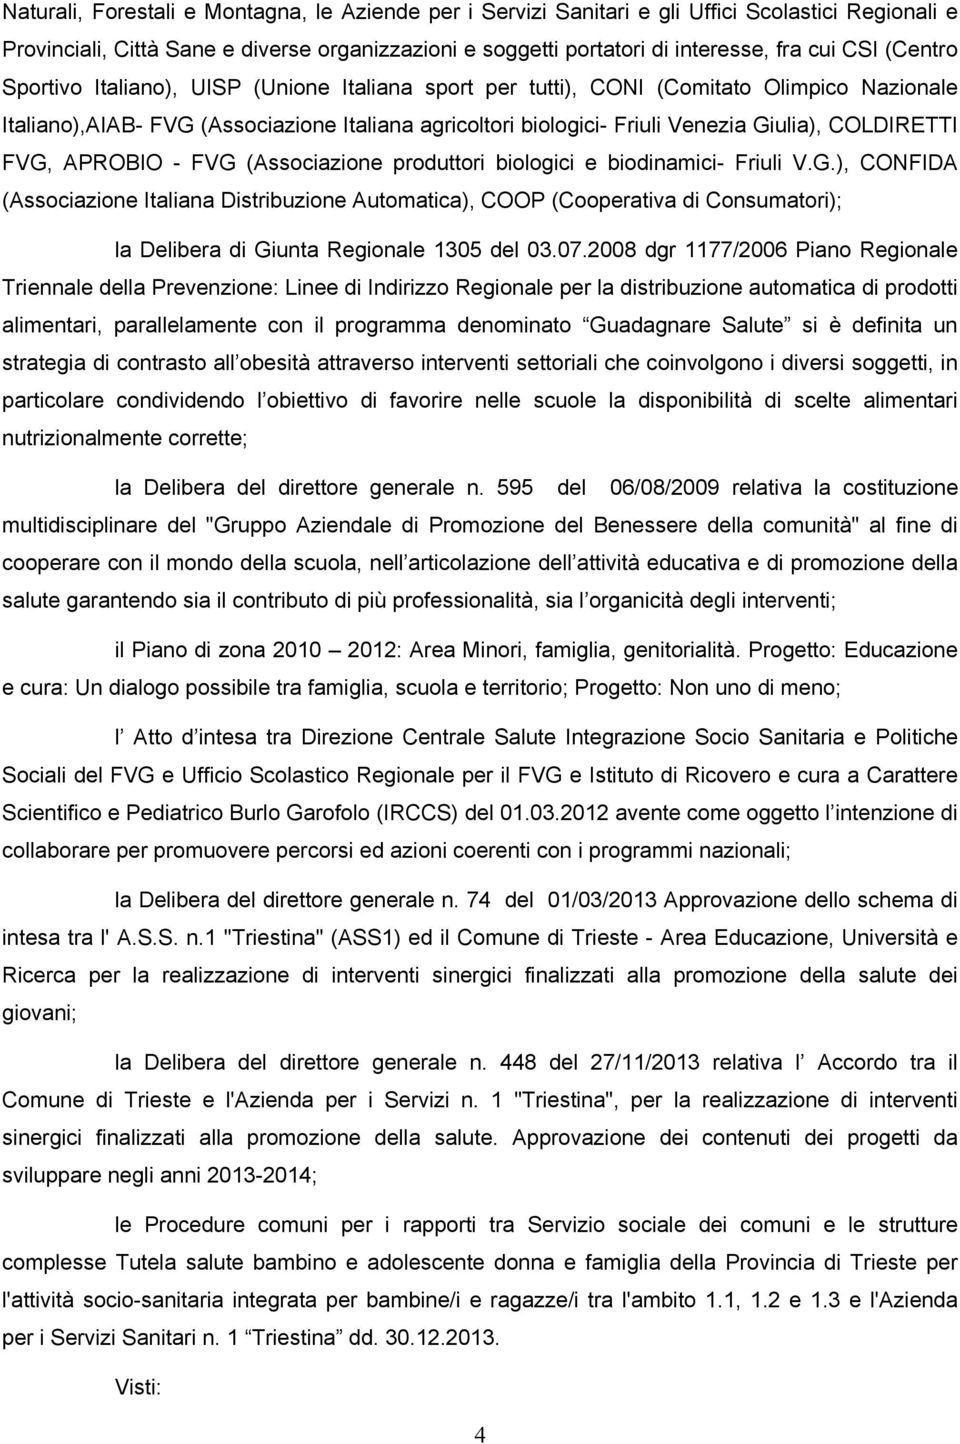 COLDIRETTI FVG, APROBIO - FVG (Associazione produttori biologici e biodinamici- Friuli V.G.), CONFIDA (Associazione Italiana Distribuzione Automatica), COOP (Cooperativa di Consumatori); la Delibera di Giunta Regionale 1305 del 03.